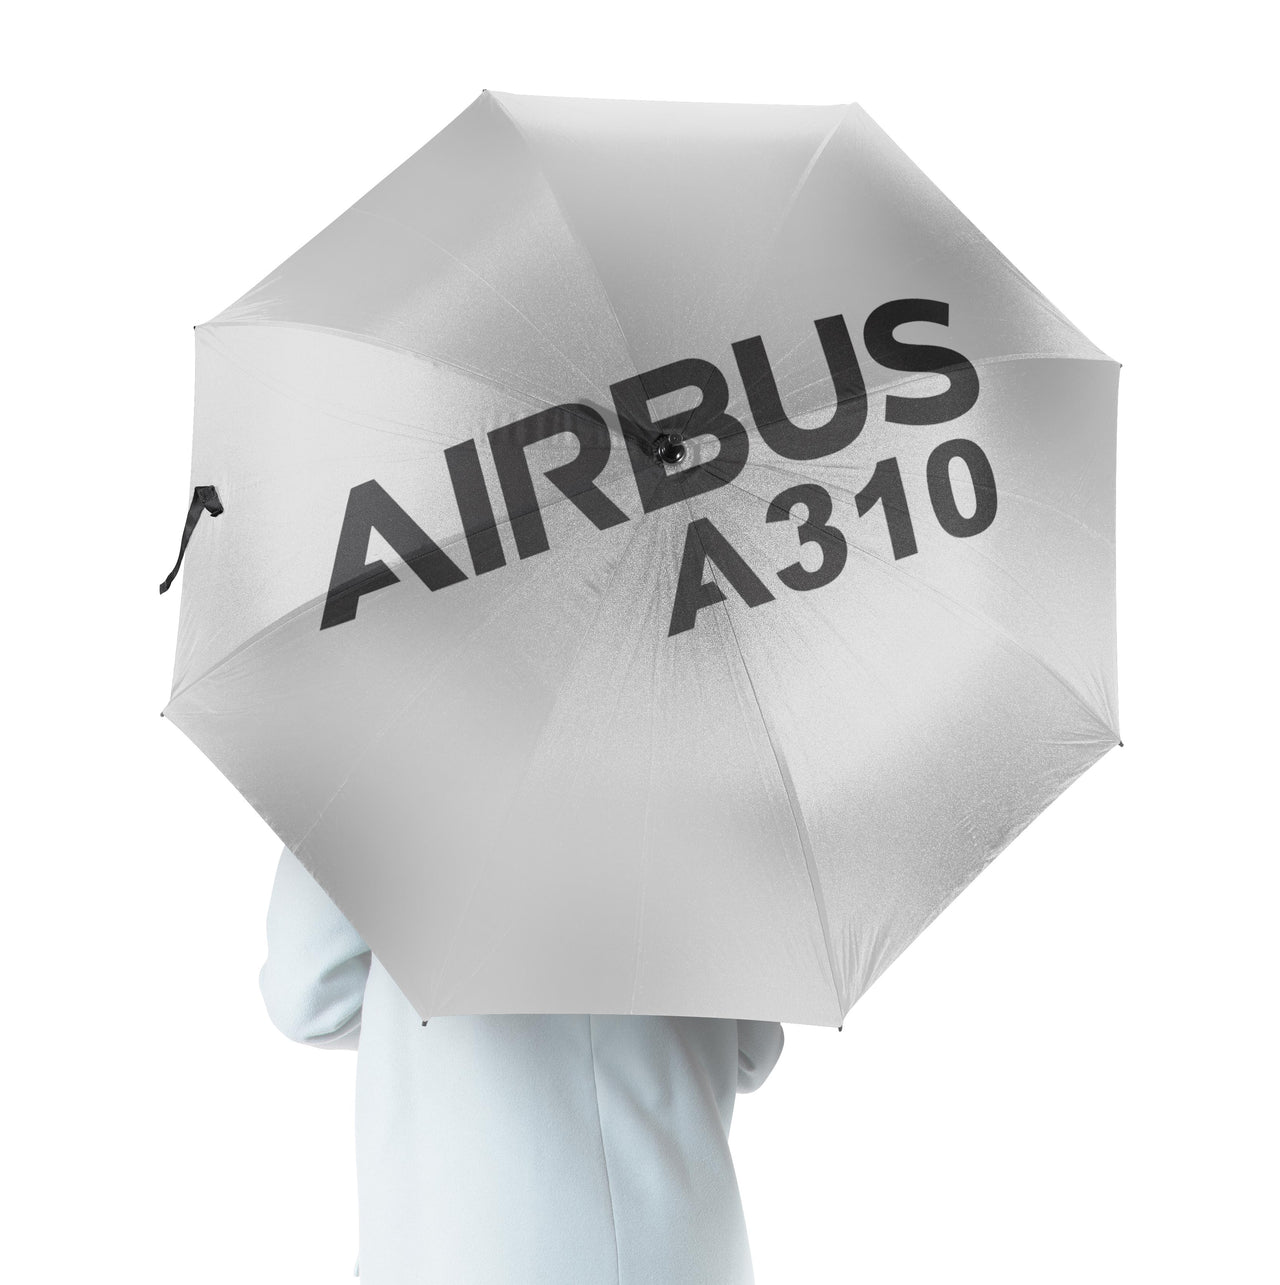 Airbus A310 & Text Designed Umbrella